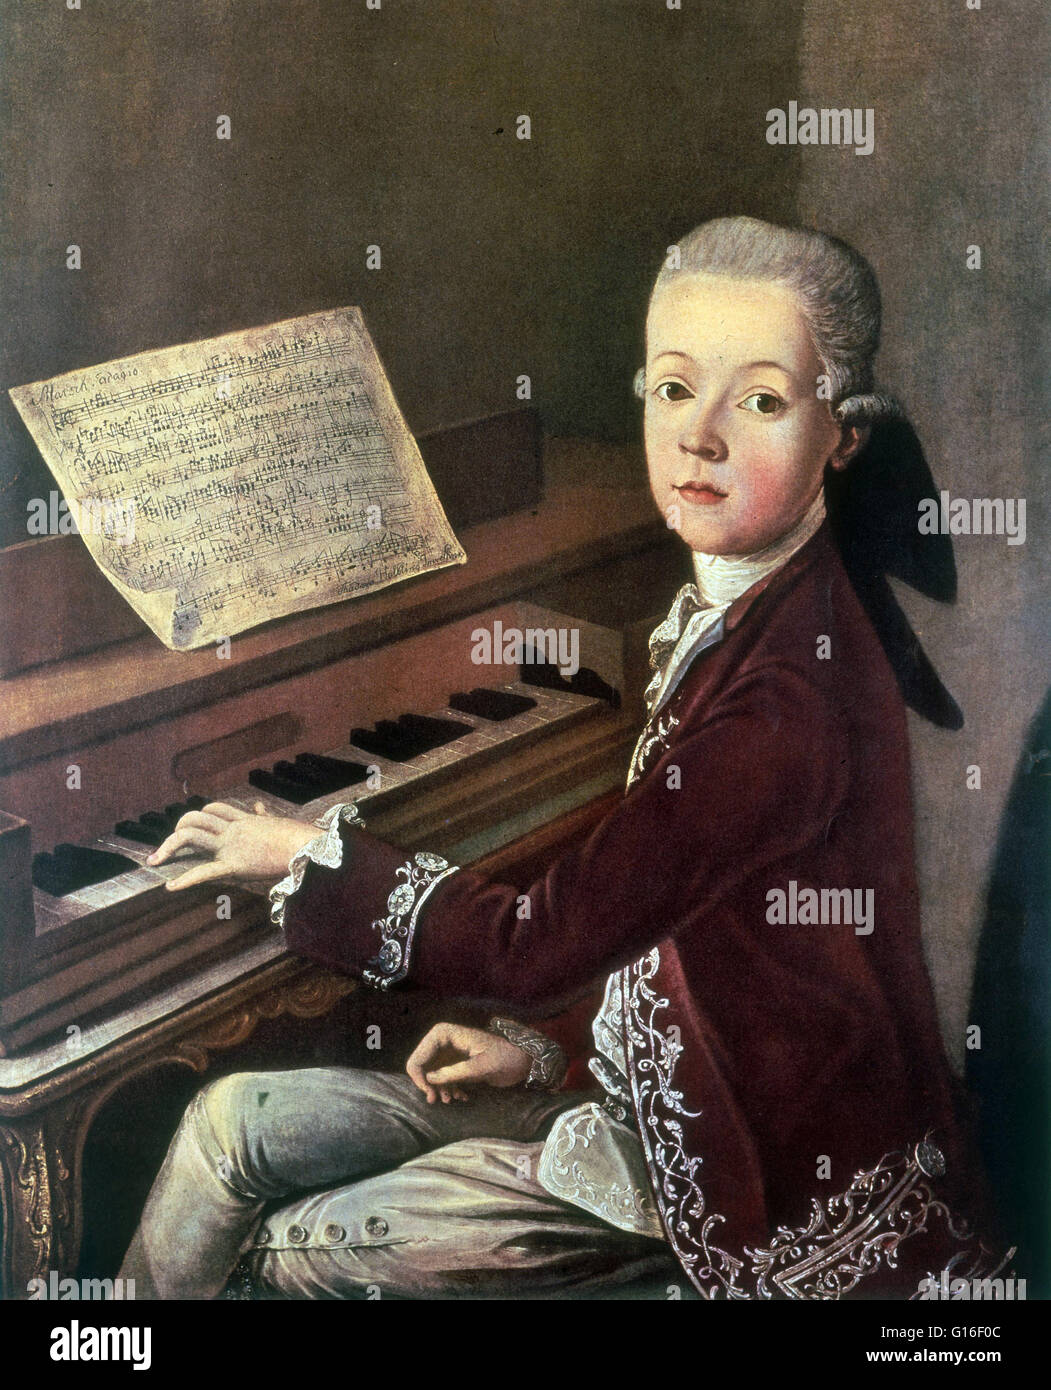 "Mozart auf dem Spinett" zugeschrieben Thaddeus Helbing, 1766-67. Wolfgang Amadeus Mozart (27. Januar 1756 - 5. Dezember 1791) war eine produktivsten und einflussreichsten Komponisten der Klassik. Er komponierte mehr als 600 Werke, anerkannt viele als Zinnen der symph Stockfoto